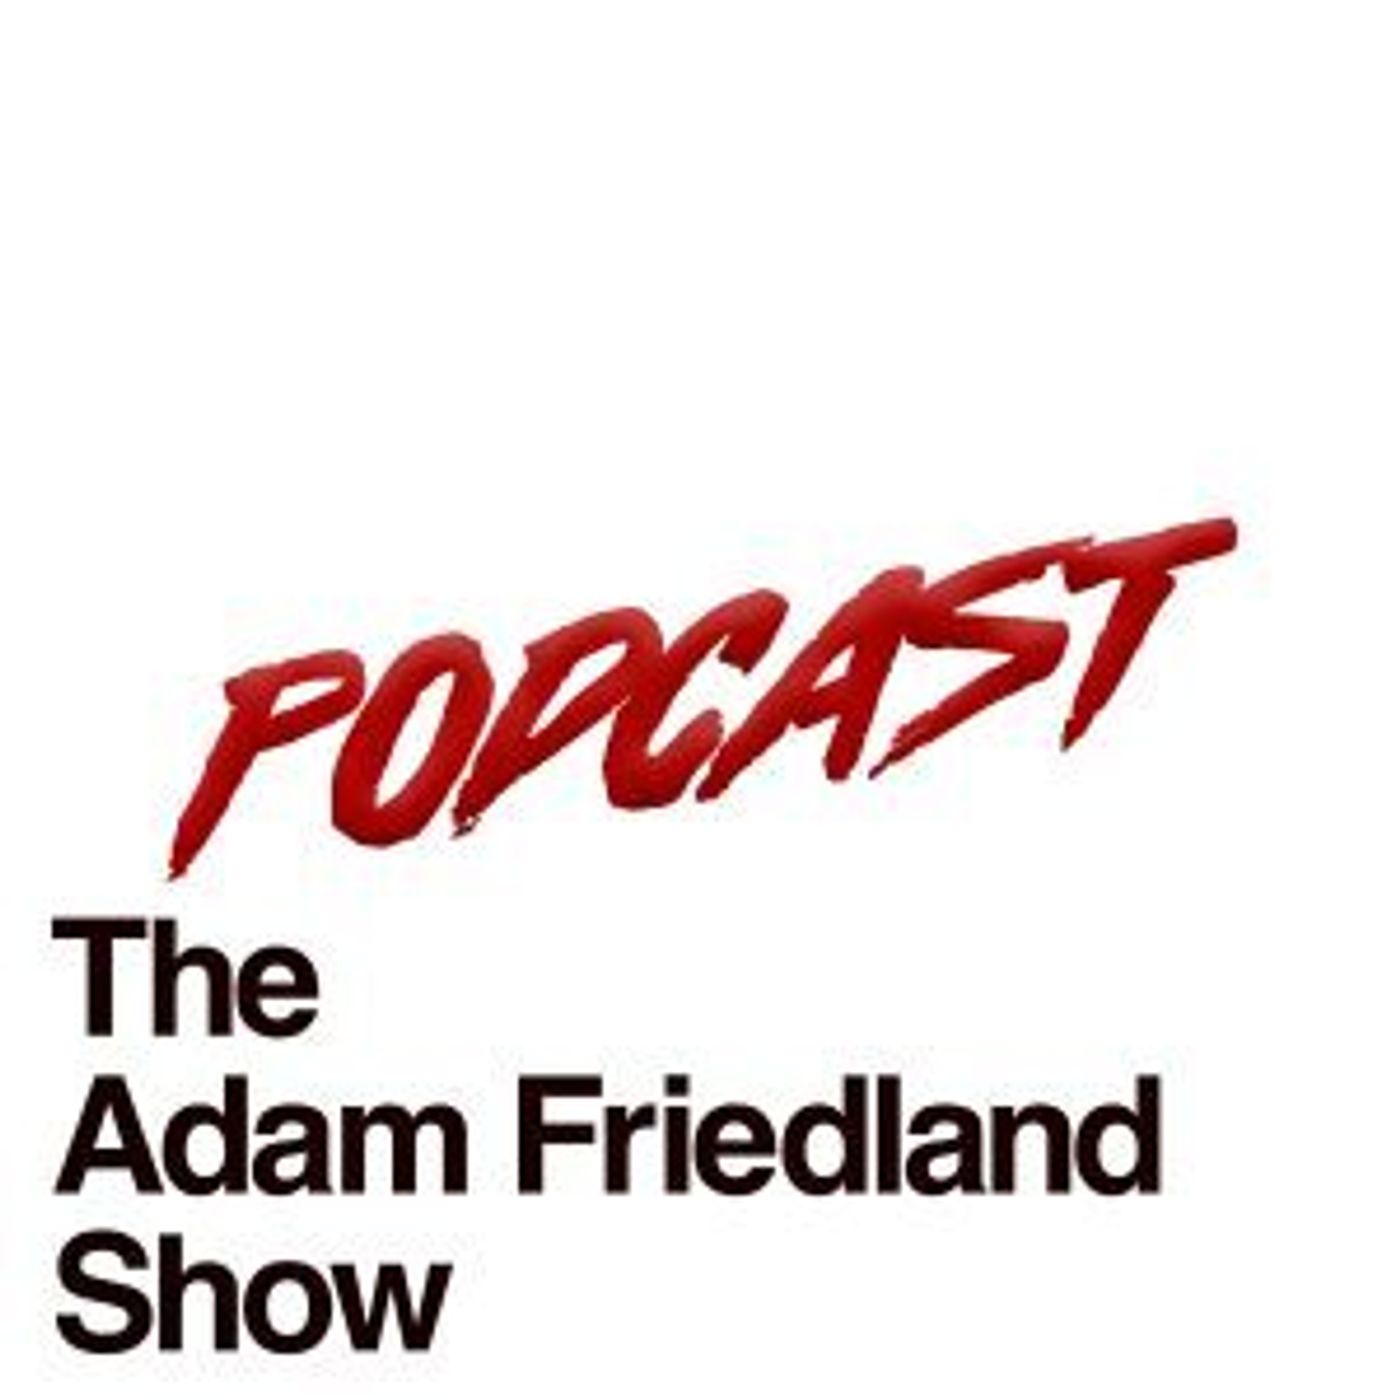 The Adam Friedland Show Retro Style Podcast – Episode 1 – The Grand Première